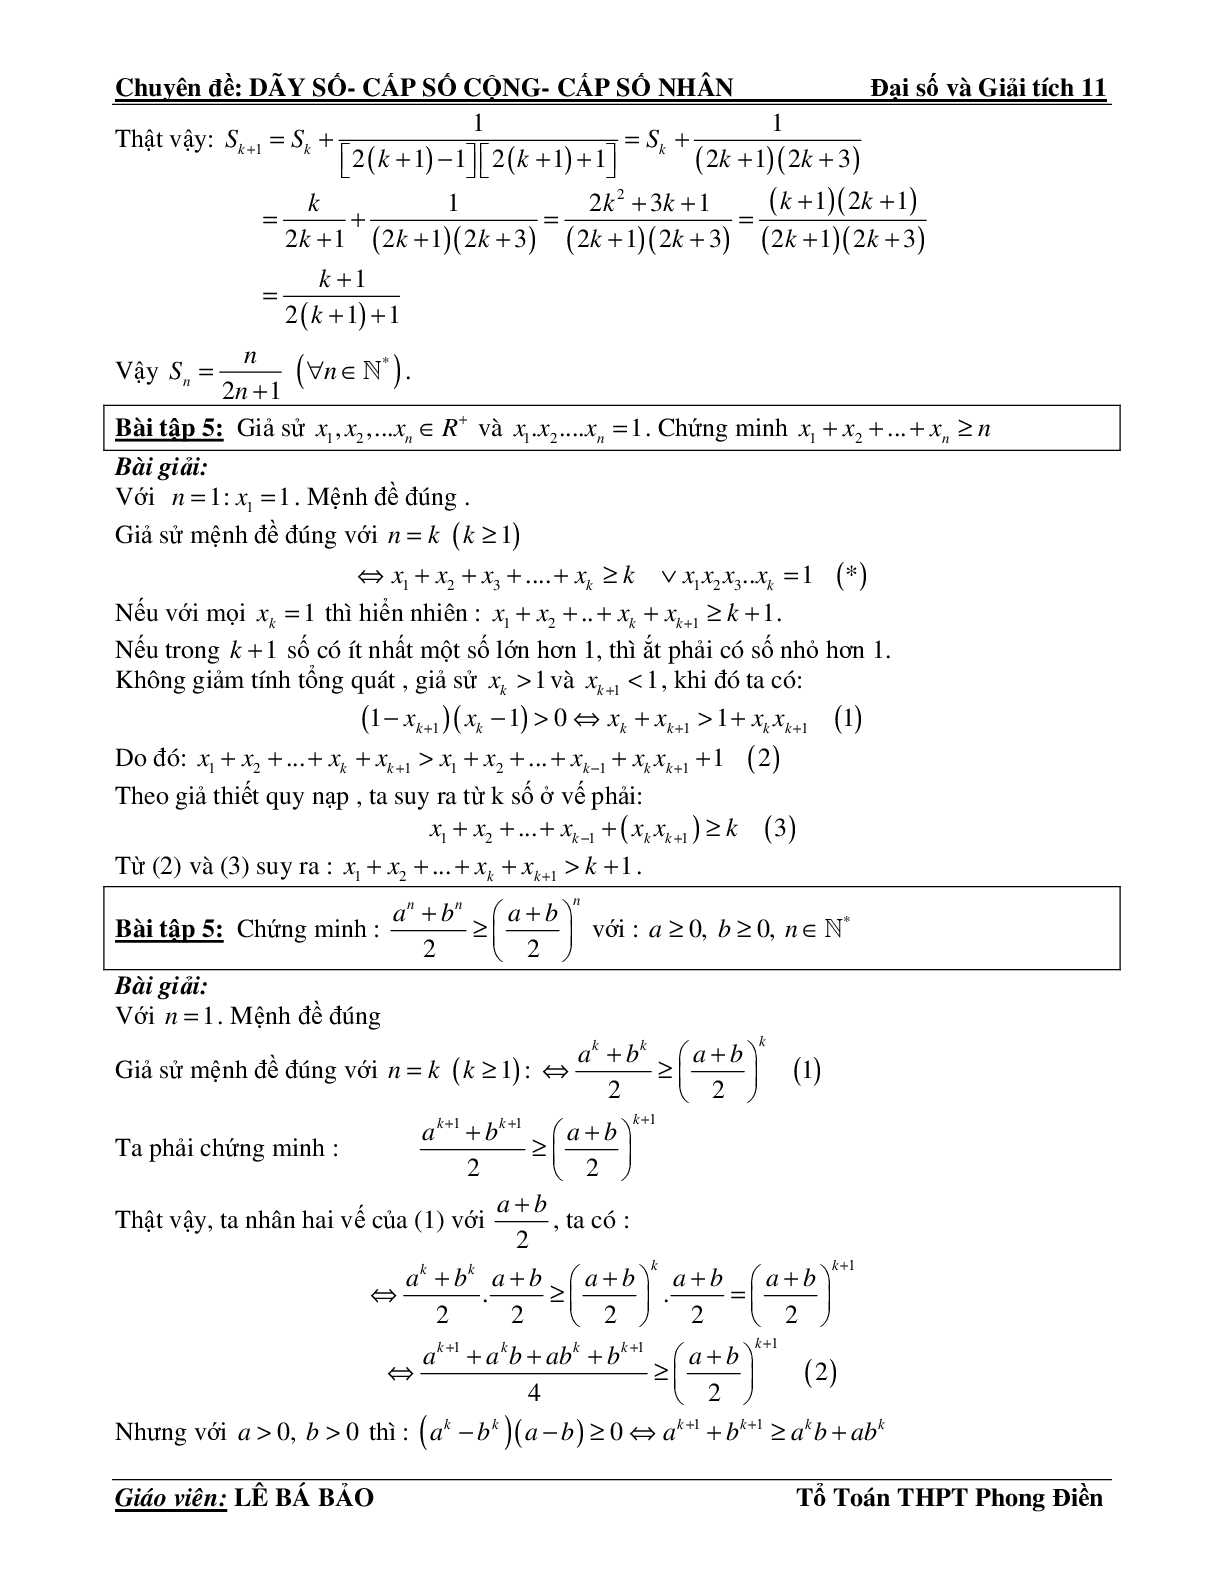 Bài tập phương pháp quy nạp toán học (trang 5)